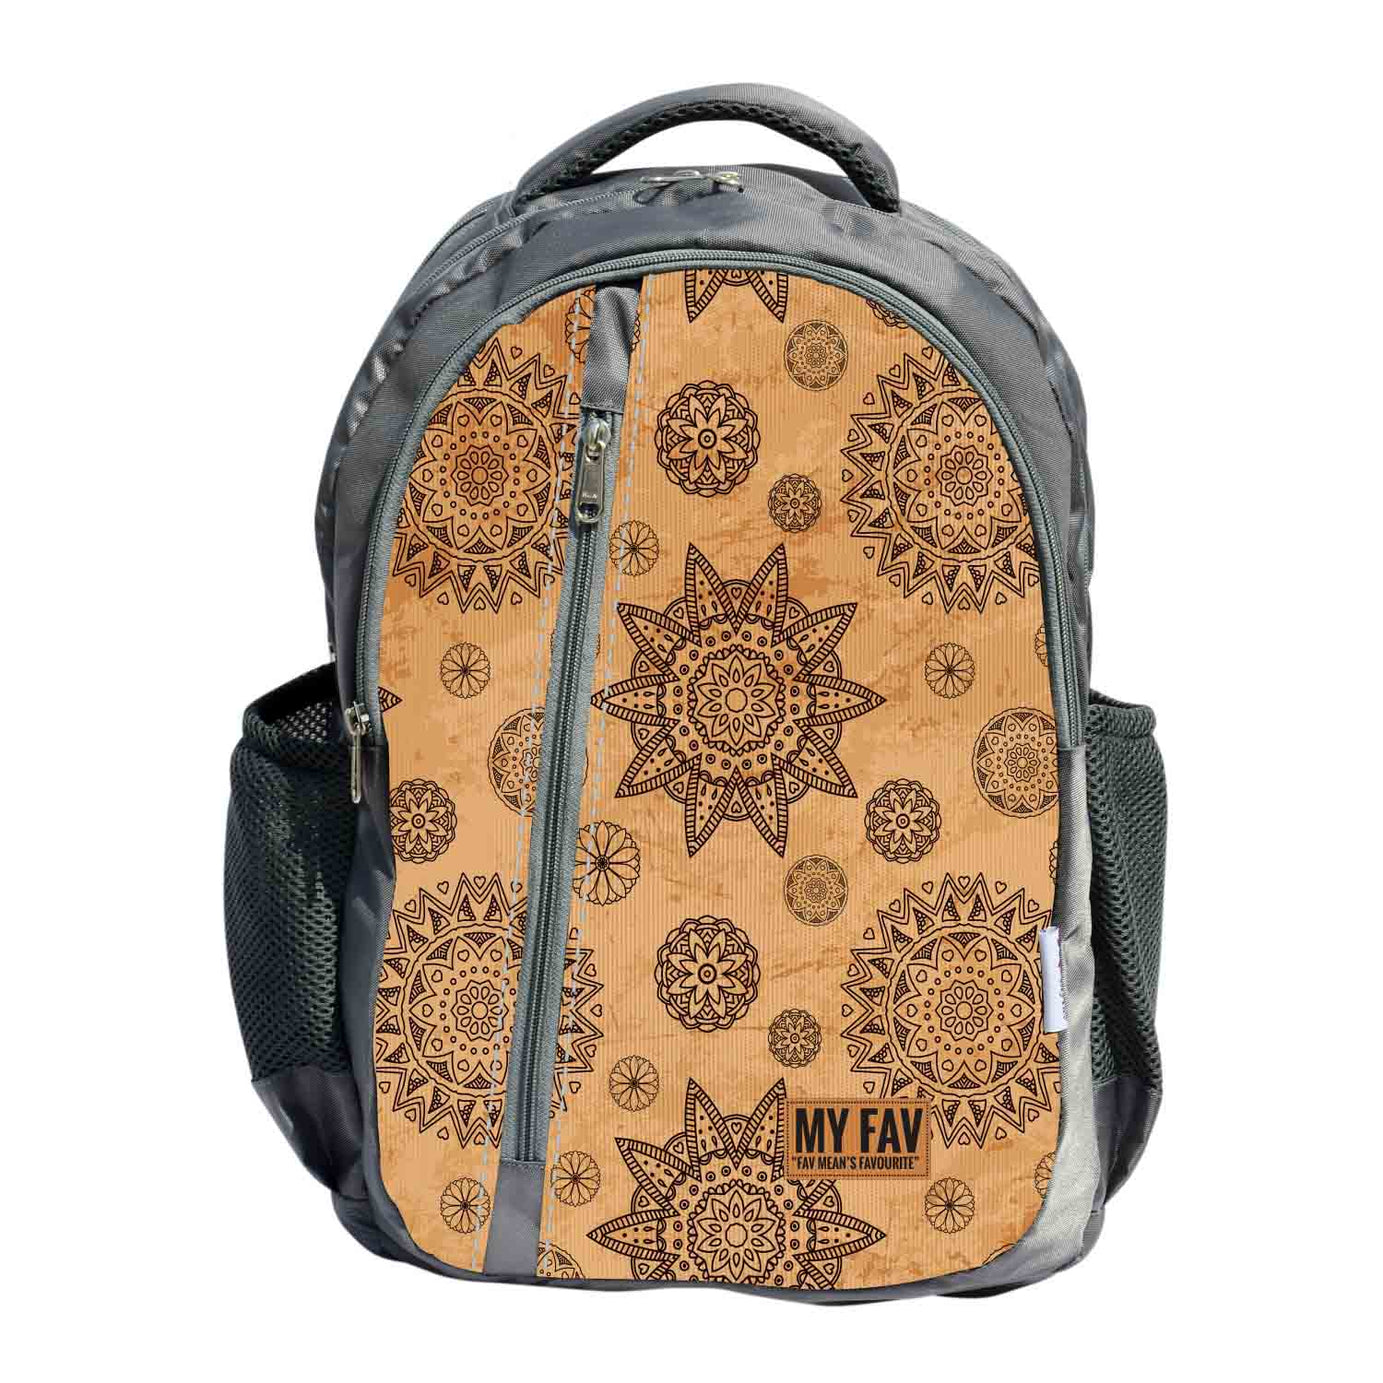 My Fav Rangoli Printed Laptop Backpack For Men Women / School Bag For Boys Girls